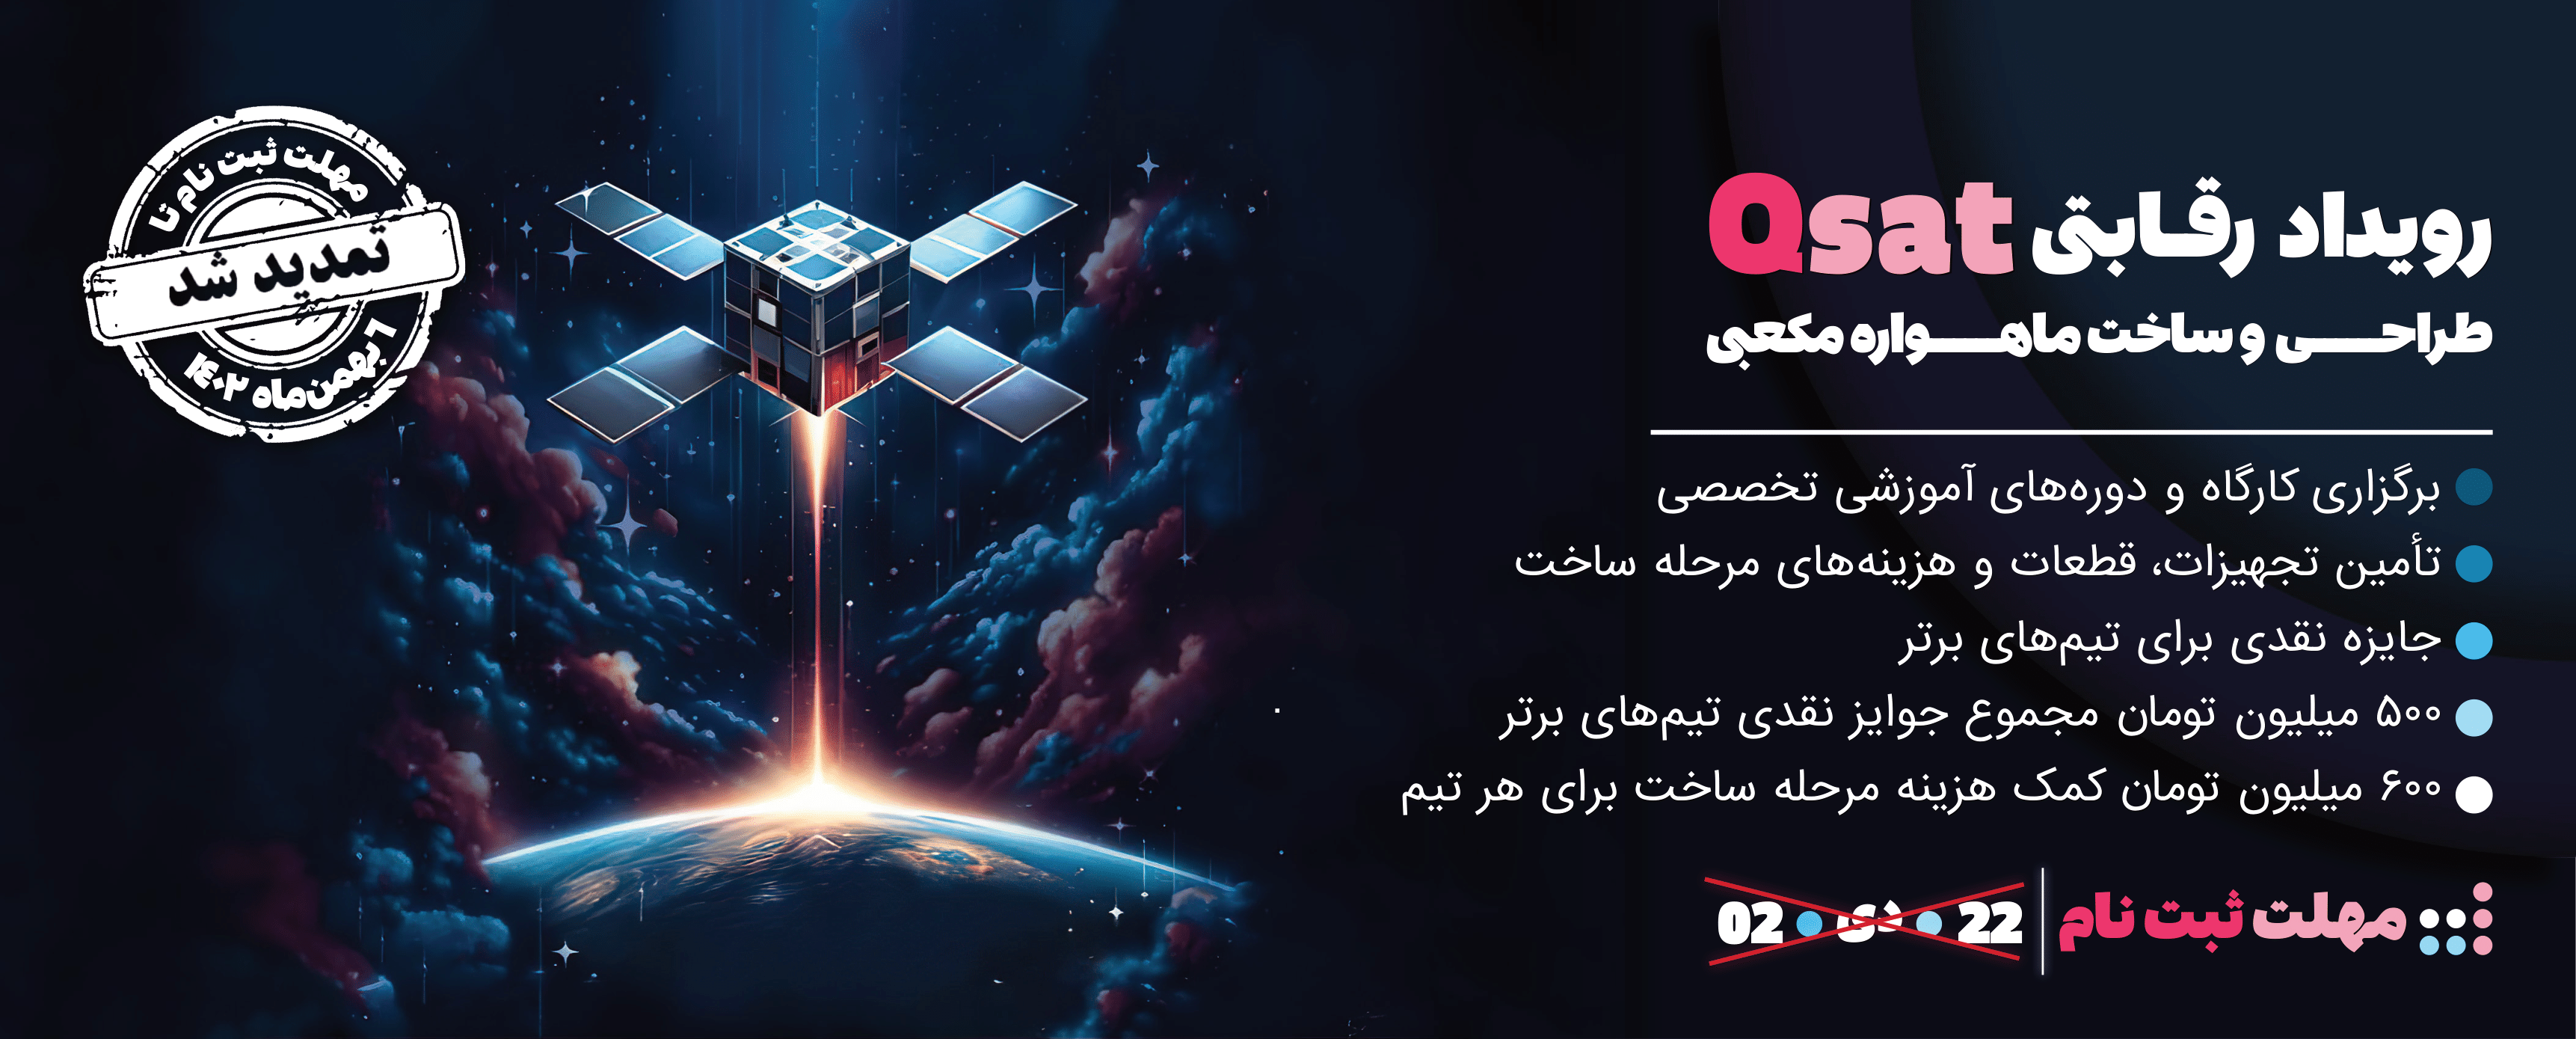 مسابقه طراحی و ساخت ماهواره مکعبی Qsat